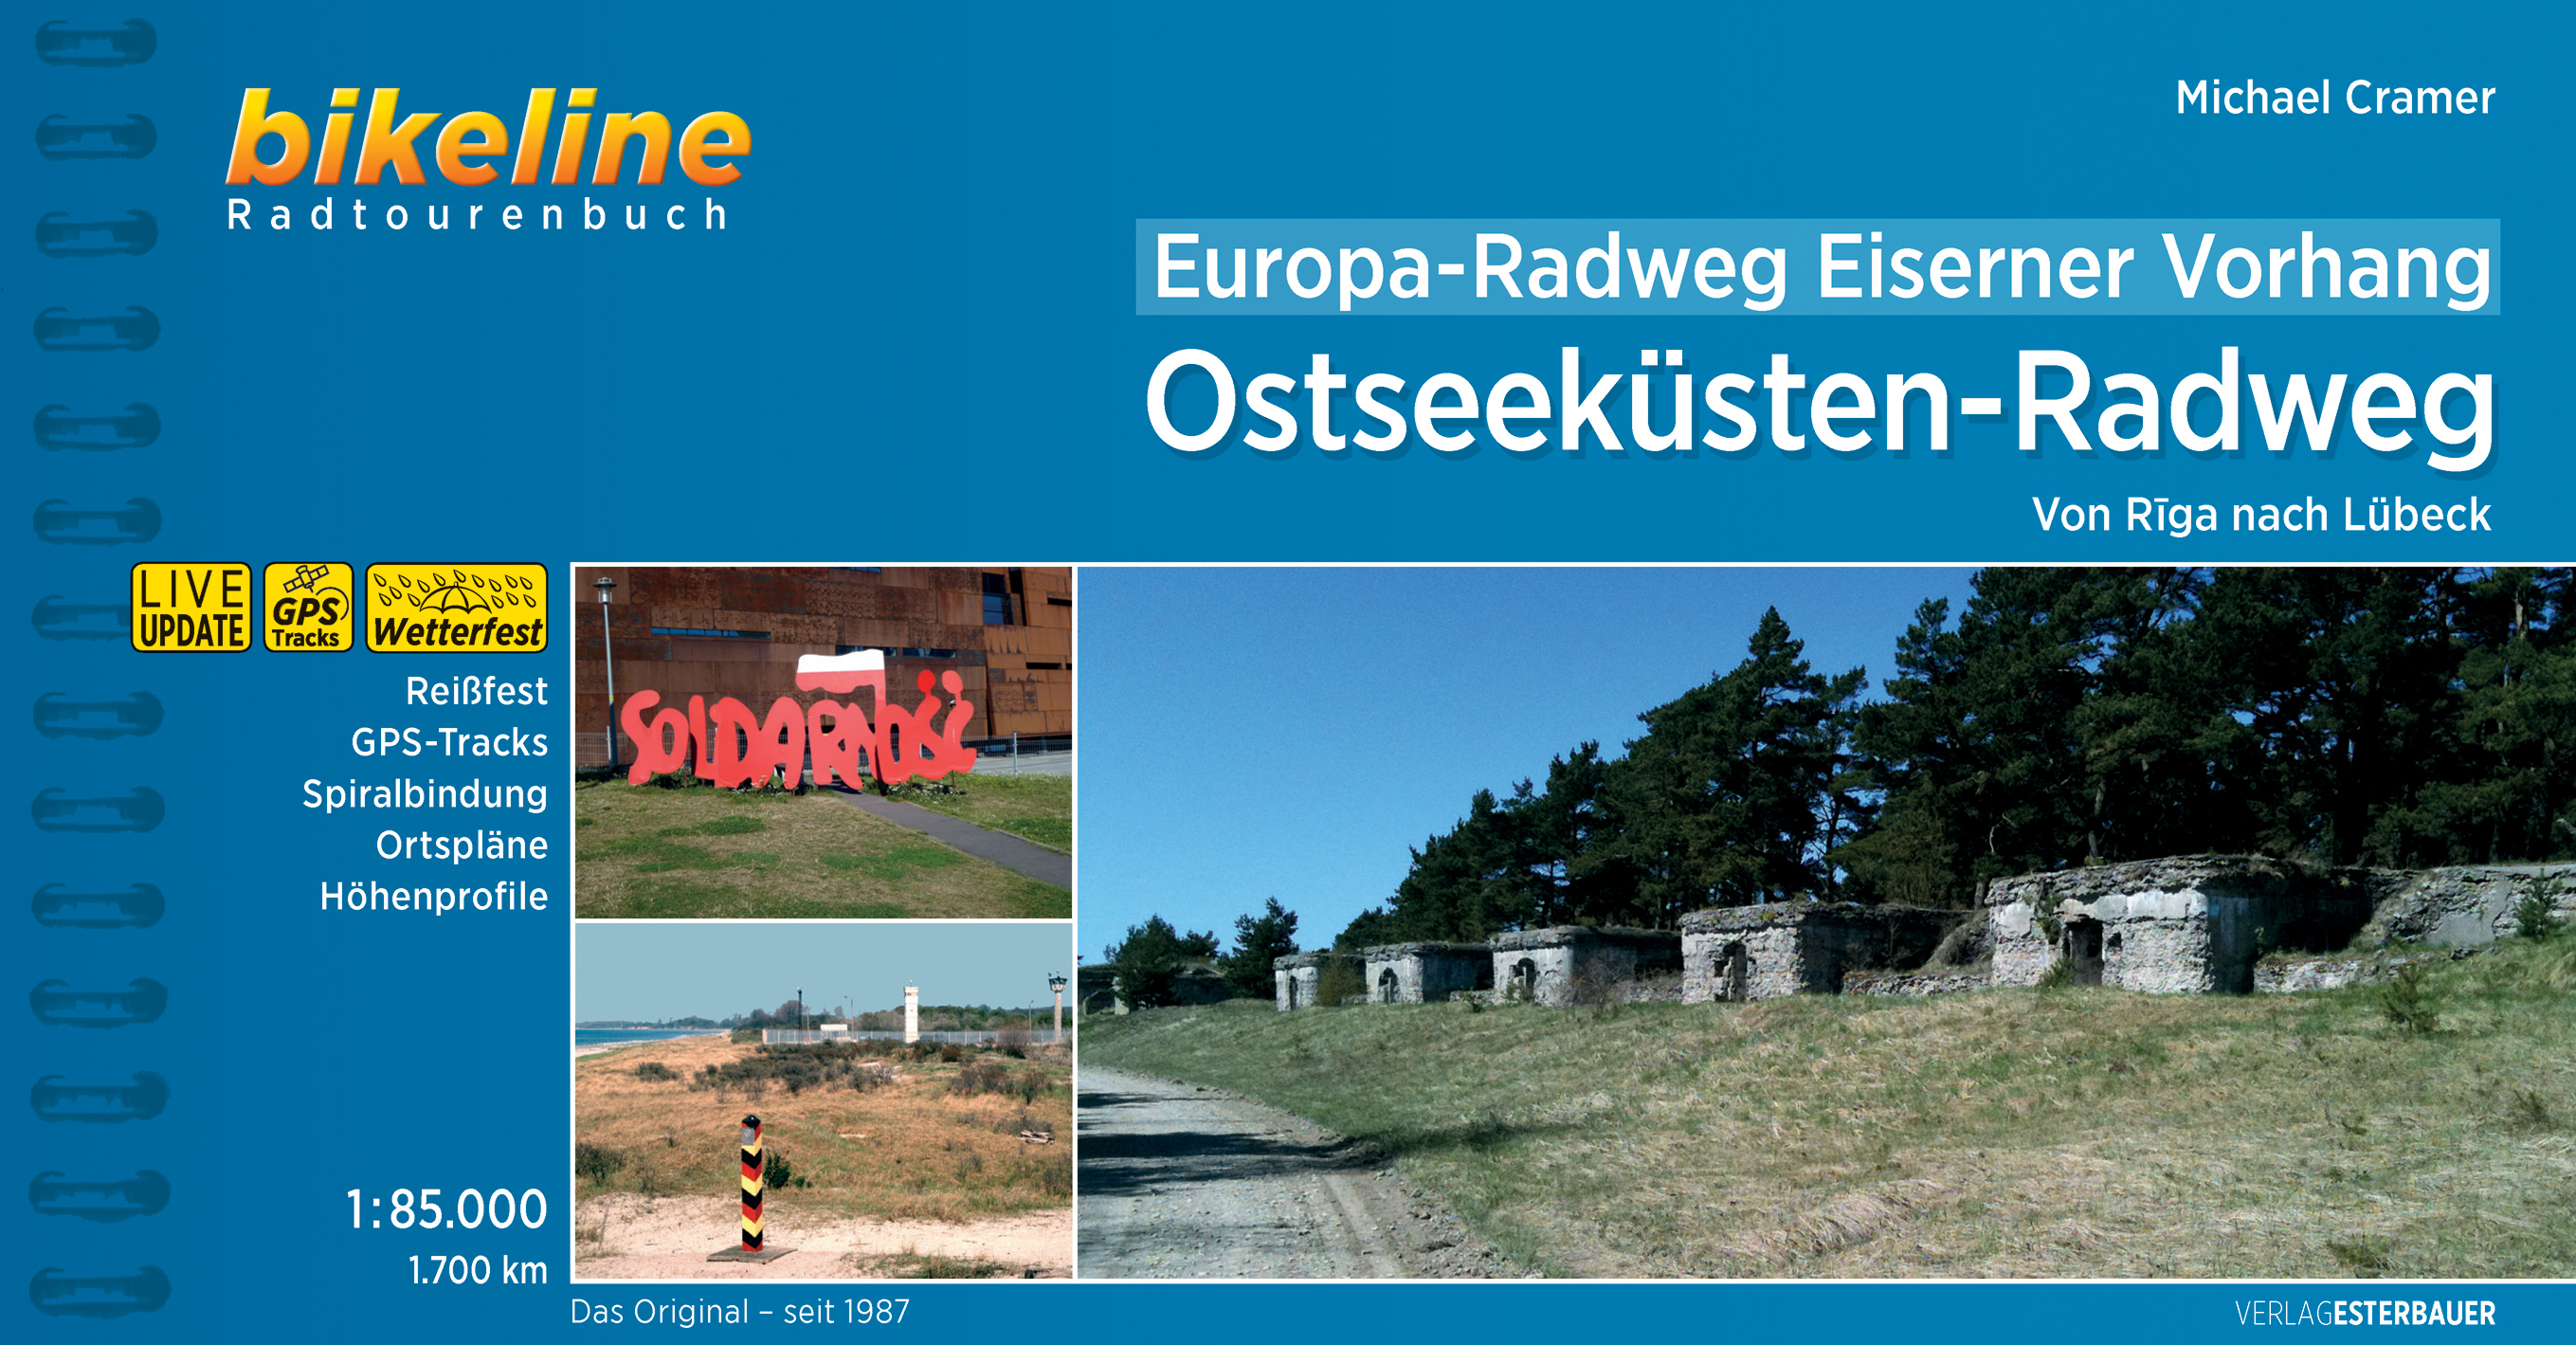 Fietsgids Bikeline Europa Radweg Eiserner Vorhang Ostseeküsten Radweg | Esterbauer